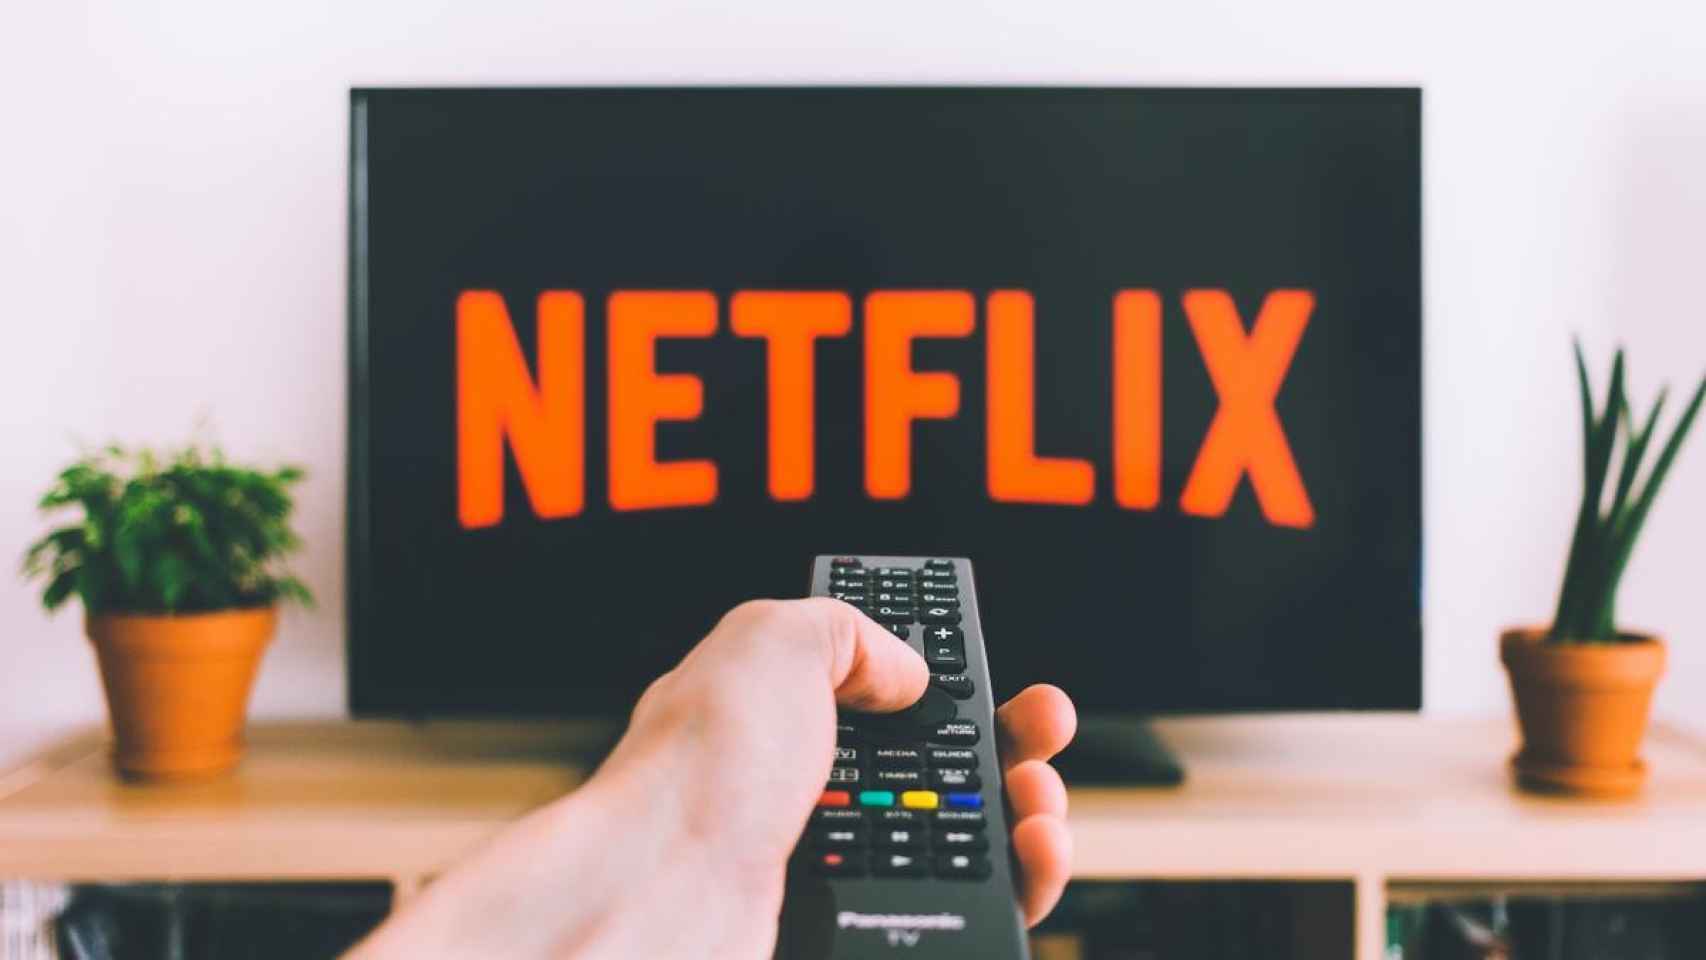 Esta es la mejor plataforma de streaming según una encuesta los usuarios: Netflix cae y se aleja del número 1.